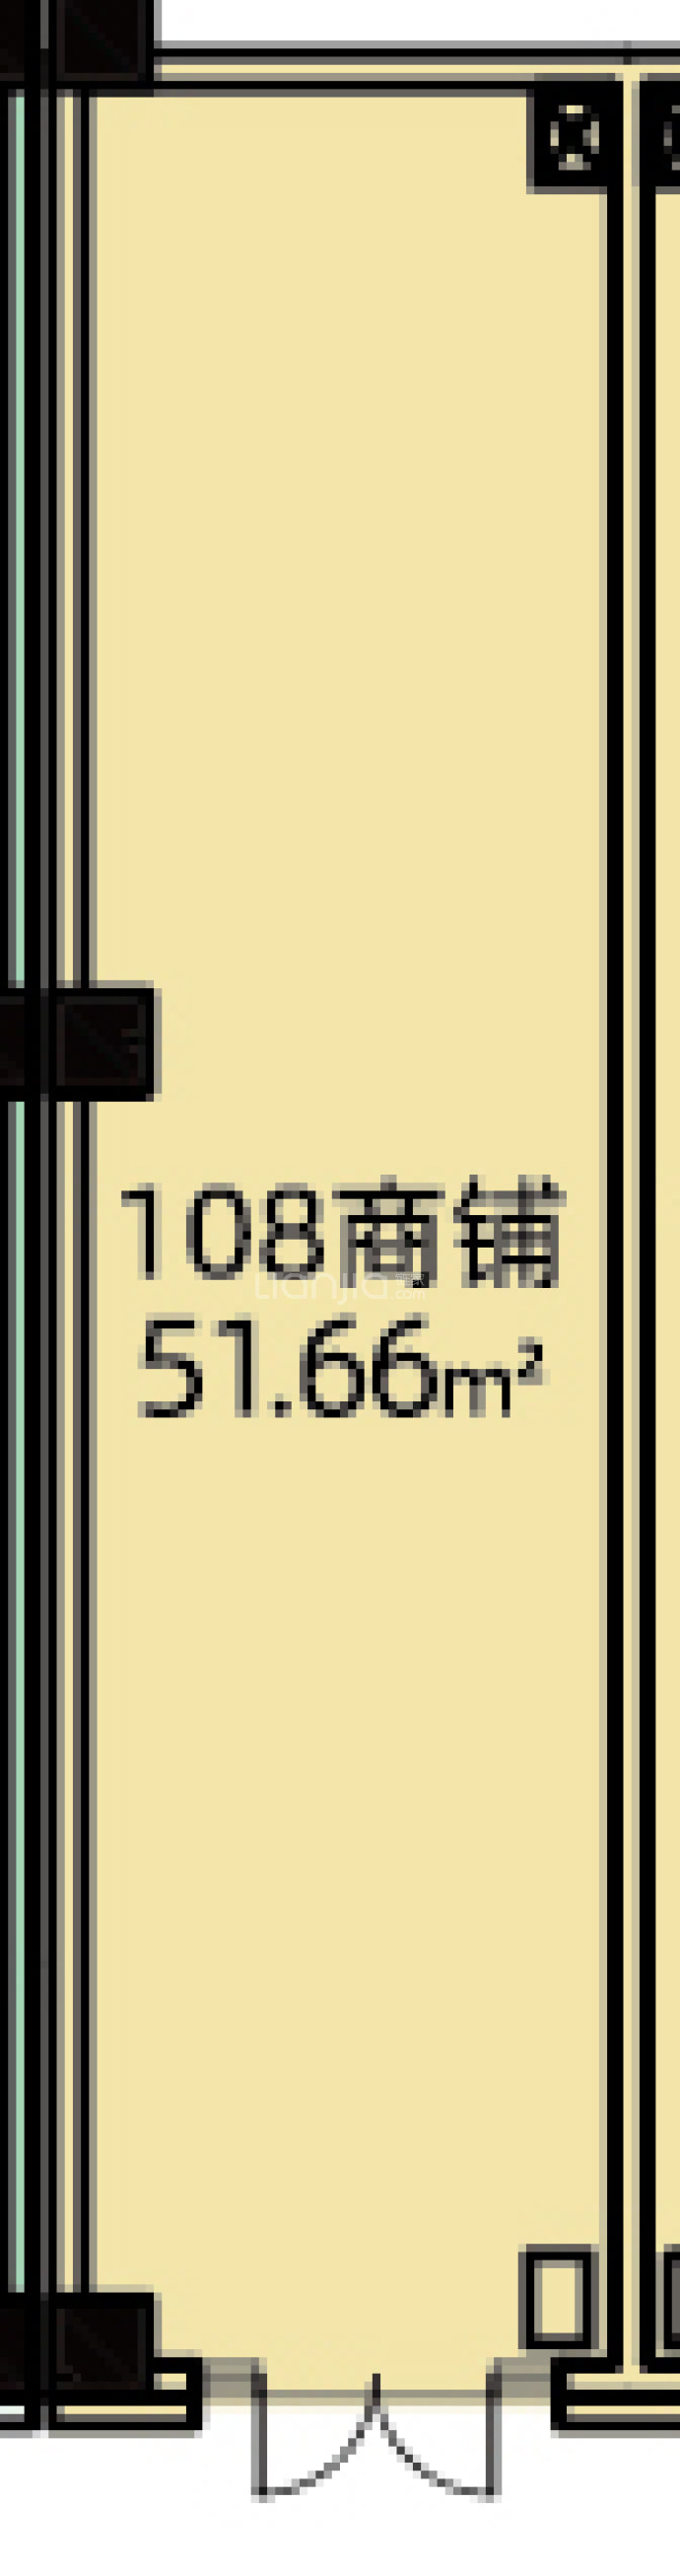 长房东旭国际--建面 51.66m²